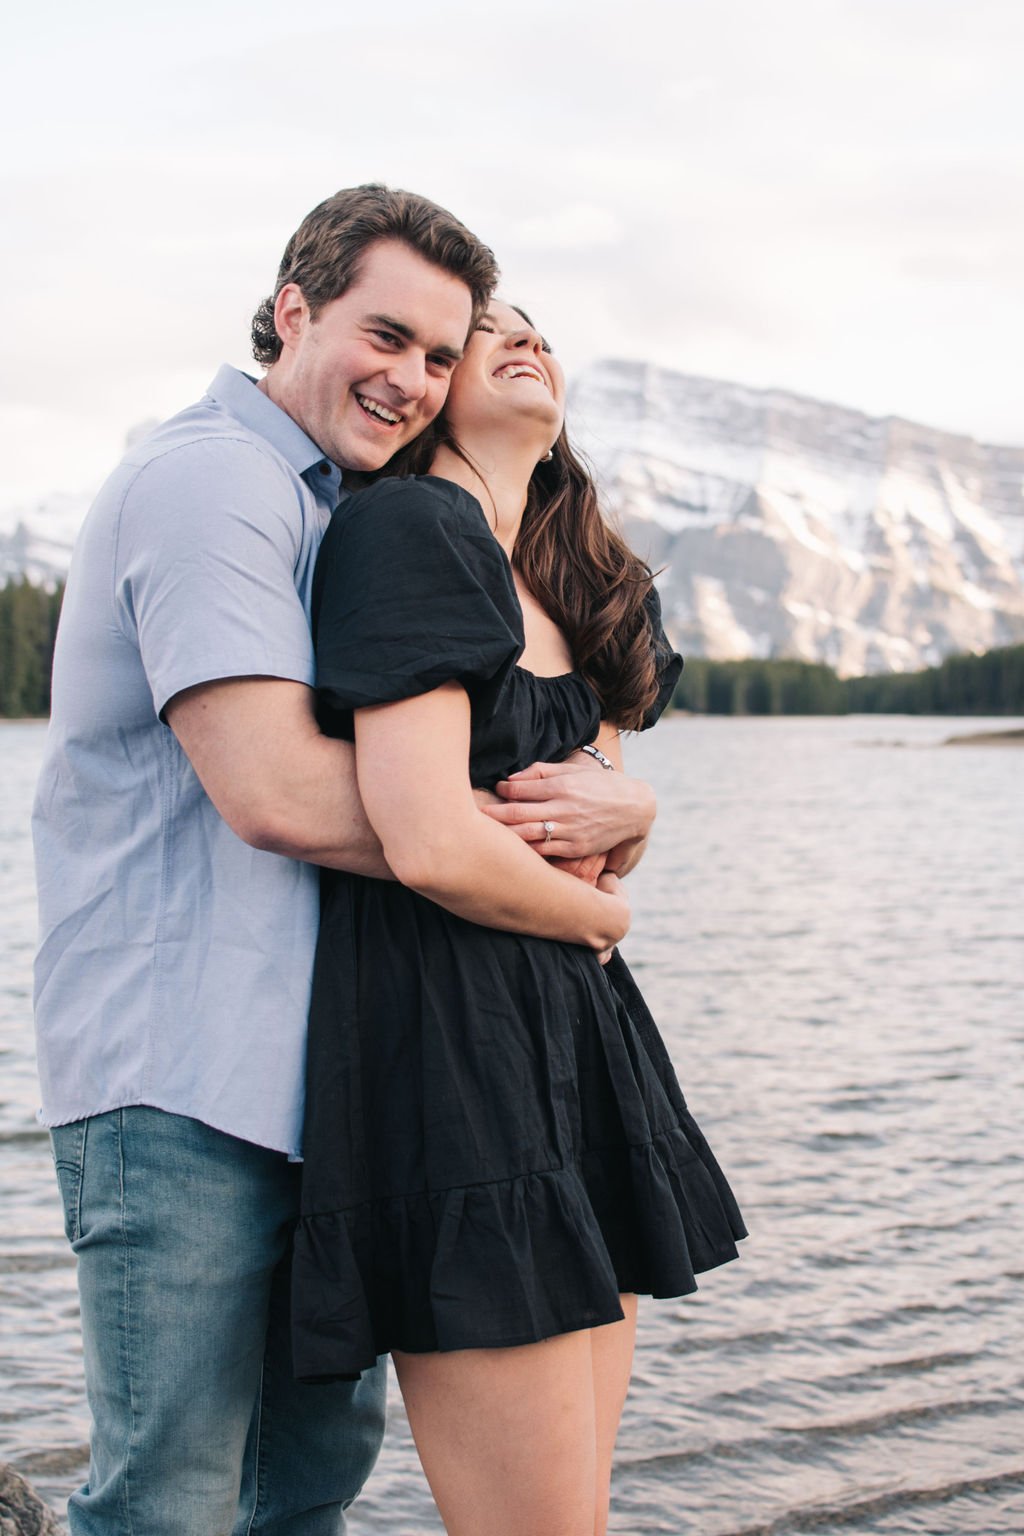 Joyous destination engagement session in Banff National park photographed by Toronto wedding photographers, Ugo Photography